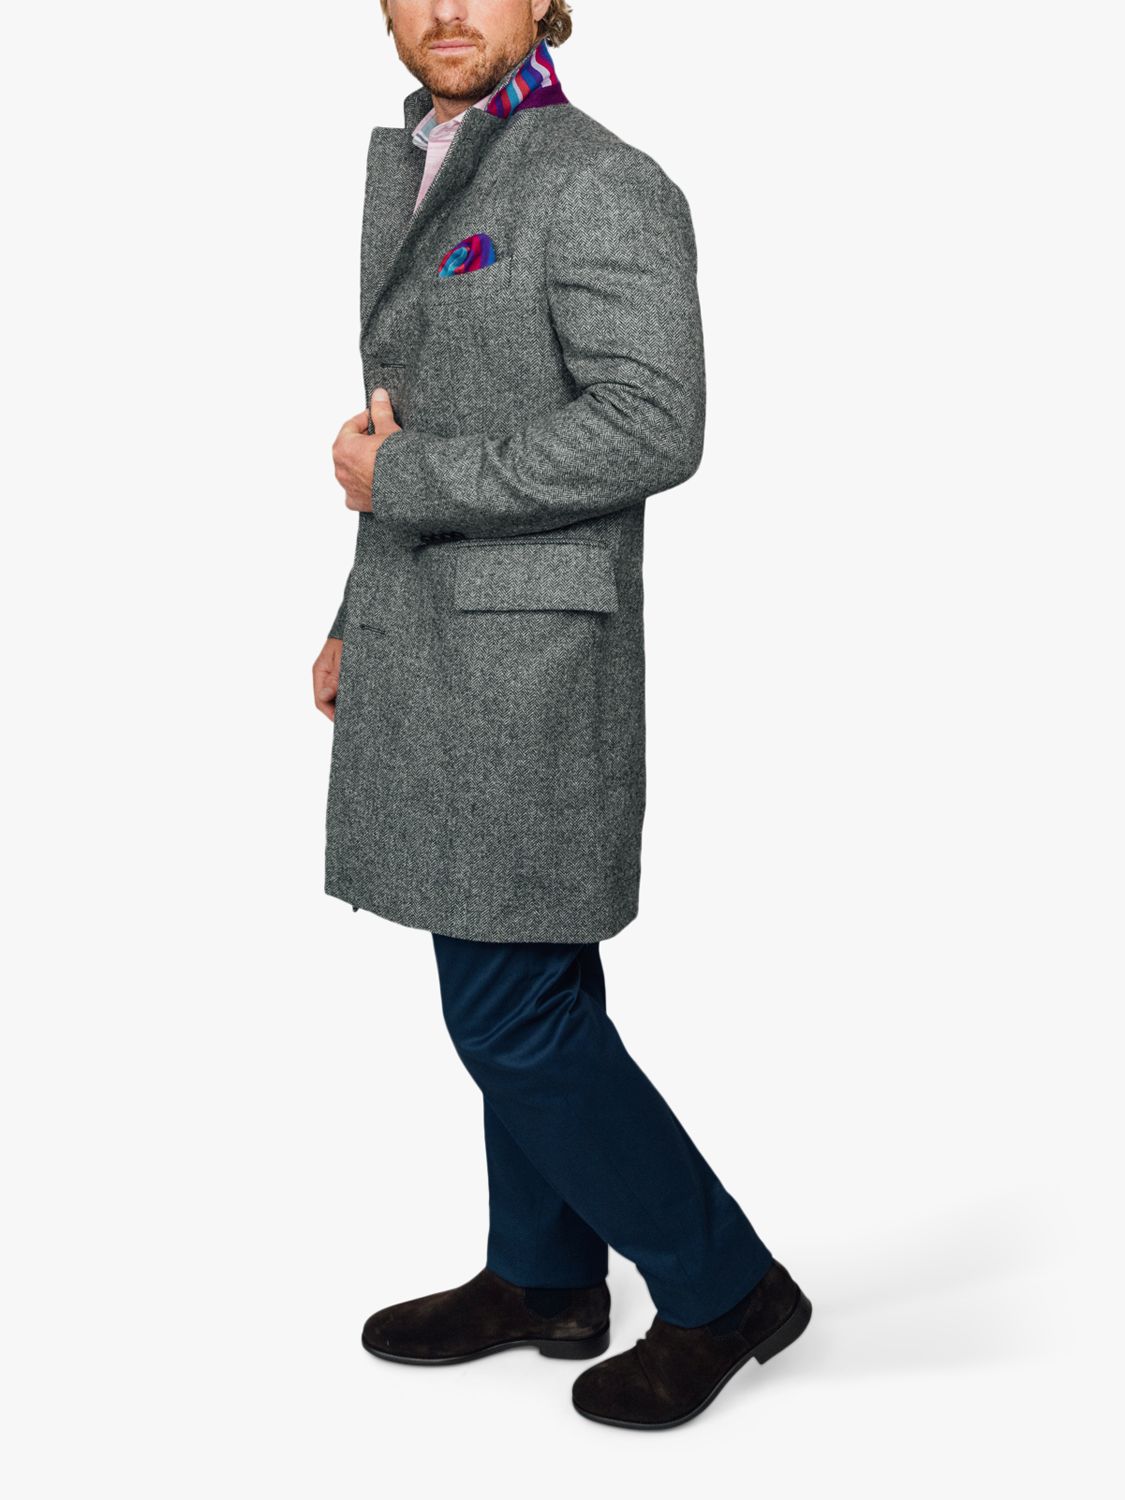 KOY Wool Herringbone Tailored Fit Overcoat, Charcoal, 38R